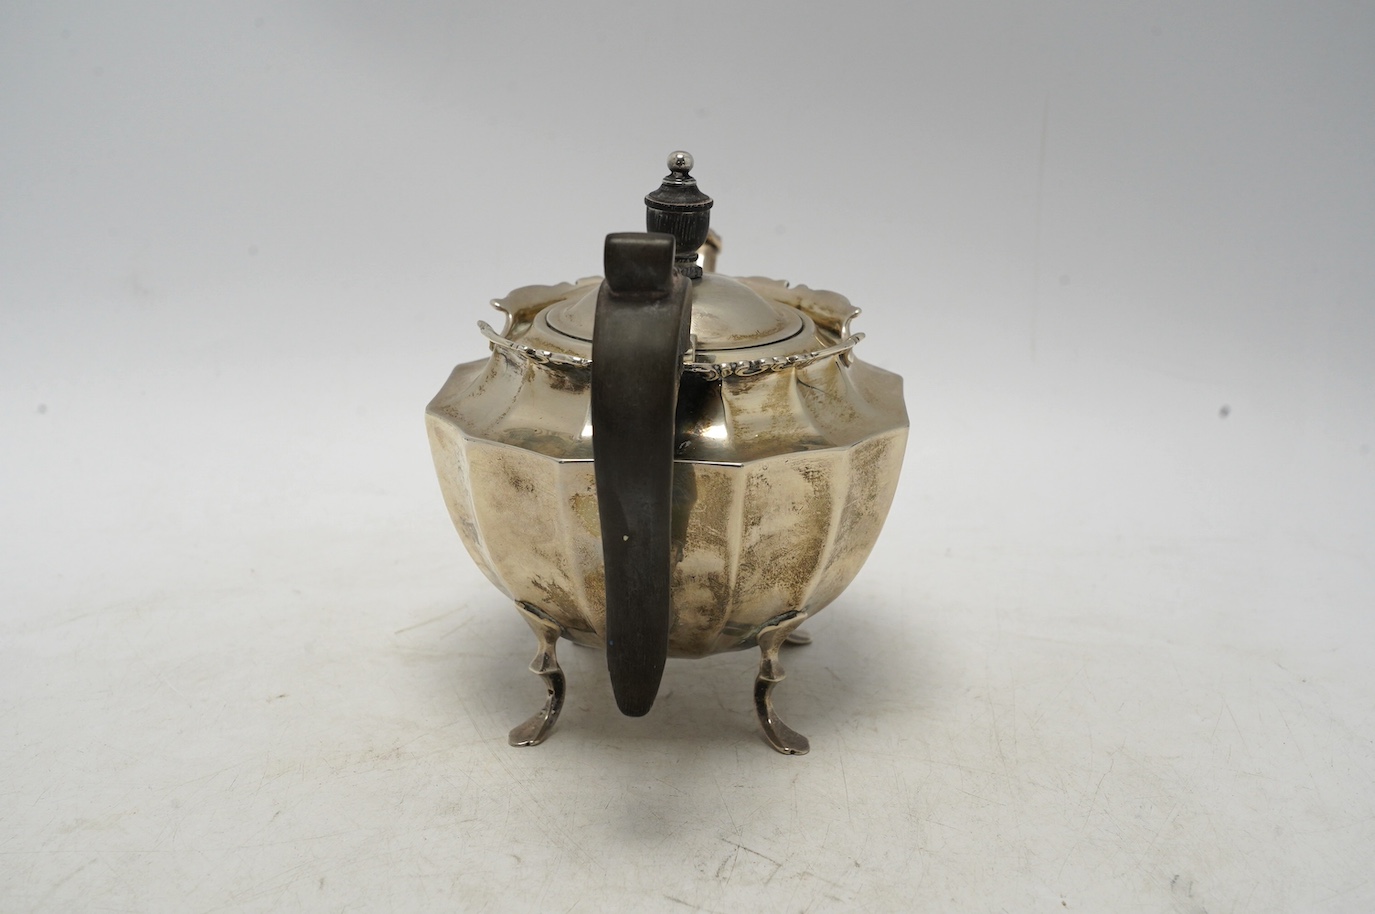 An Edwardian silver bachelor's teapot, Barker Brothers, Birmingham, 1906, gross weight 11.2oz. Condition - fair